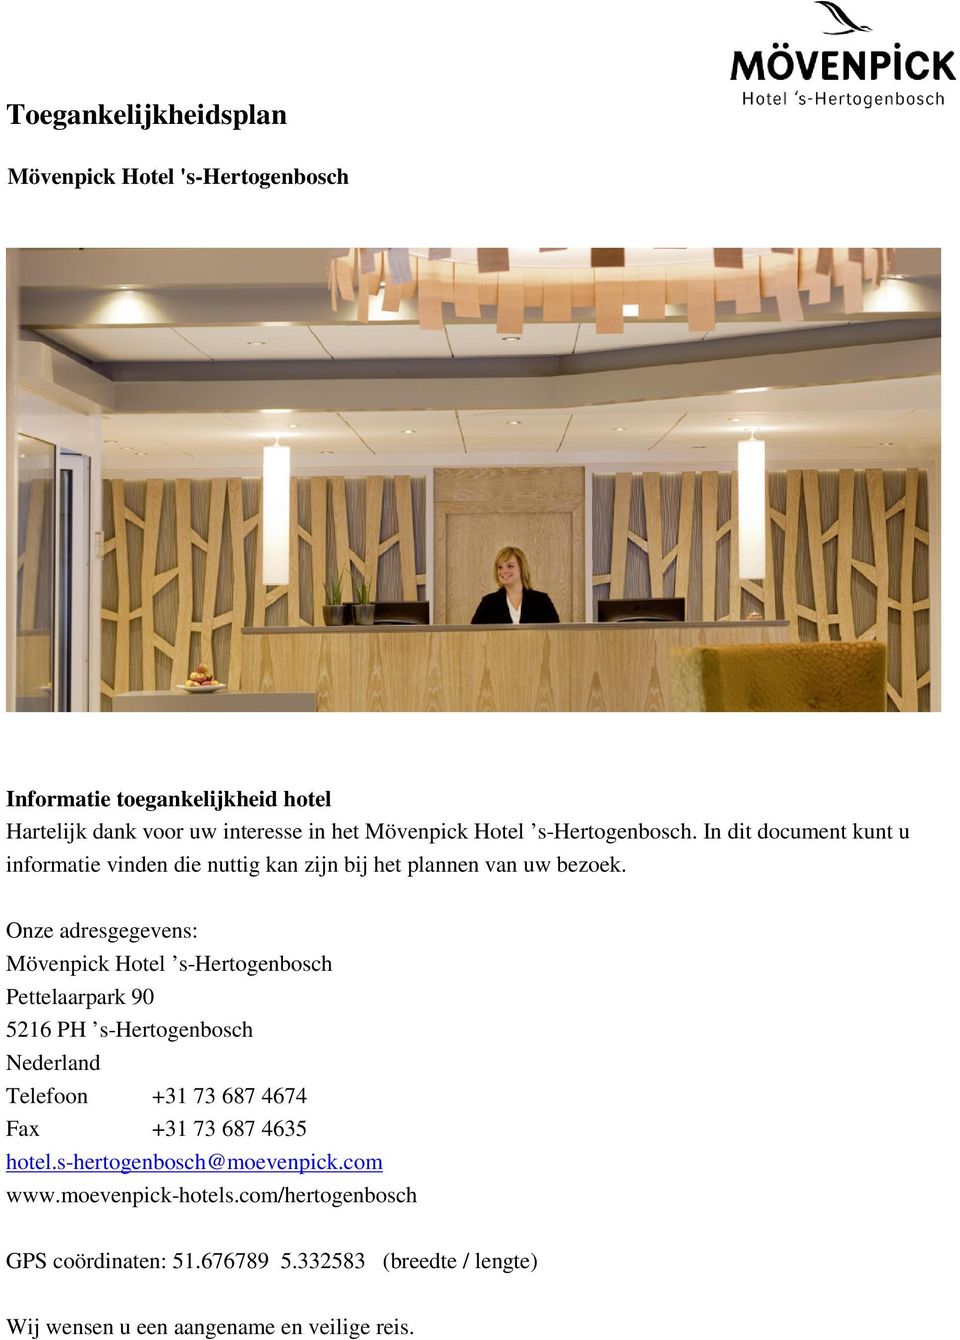 Onze adresgegevens: Mövenpick Hotel s-hertogenbosch Pettelaarpark 90 5216 PH s-hertogenbosch Nederland Telefoon +31 73 687 4674 Fax +31 73 687